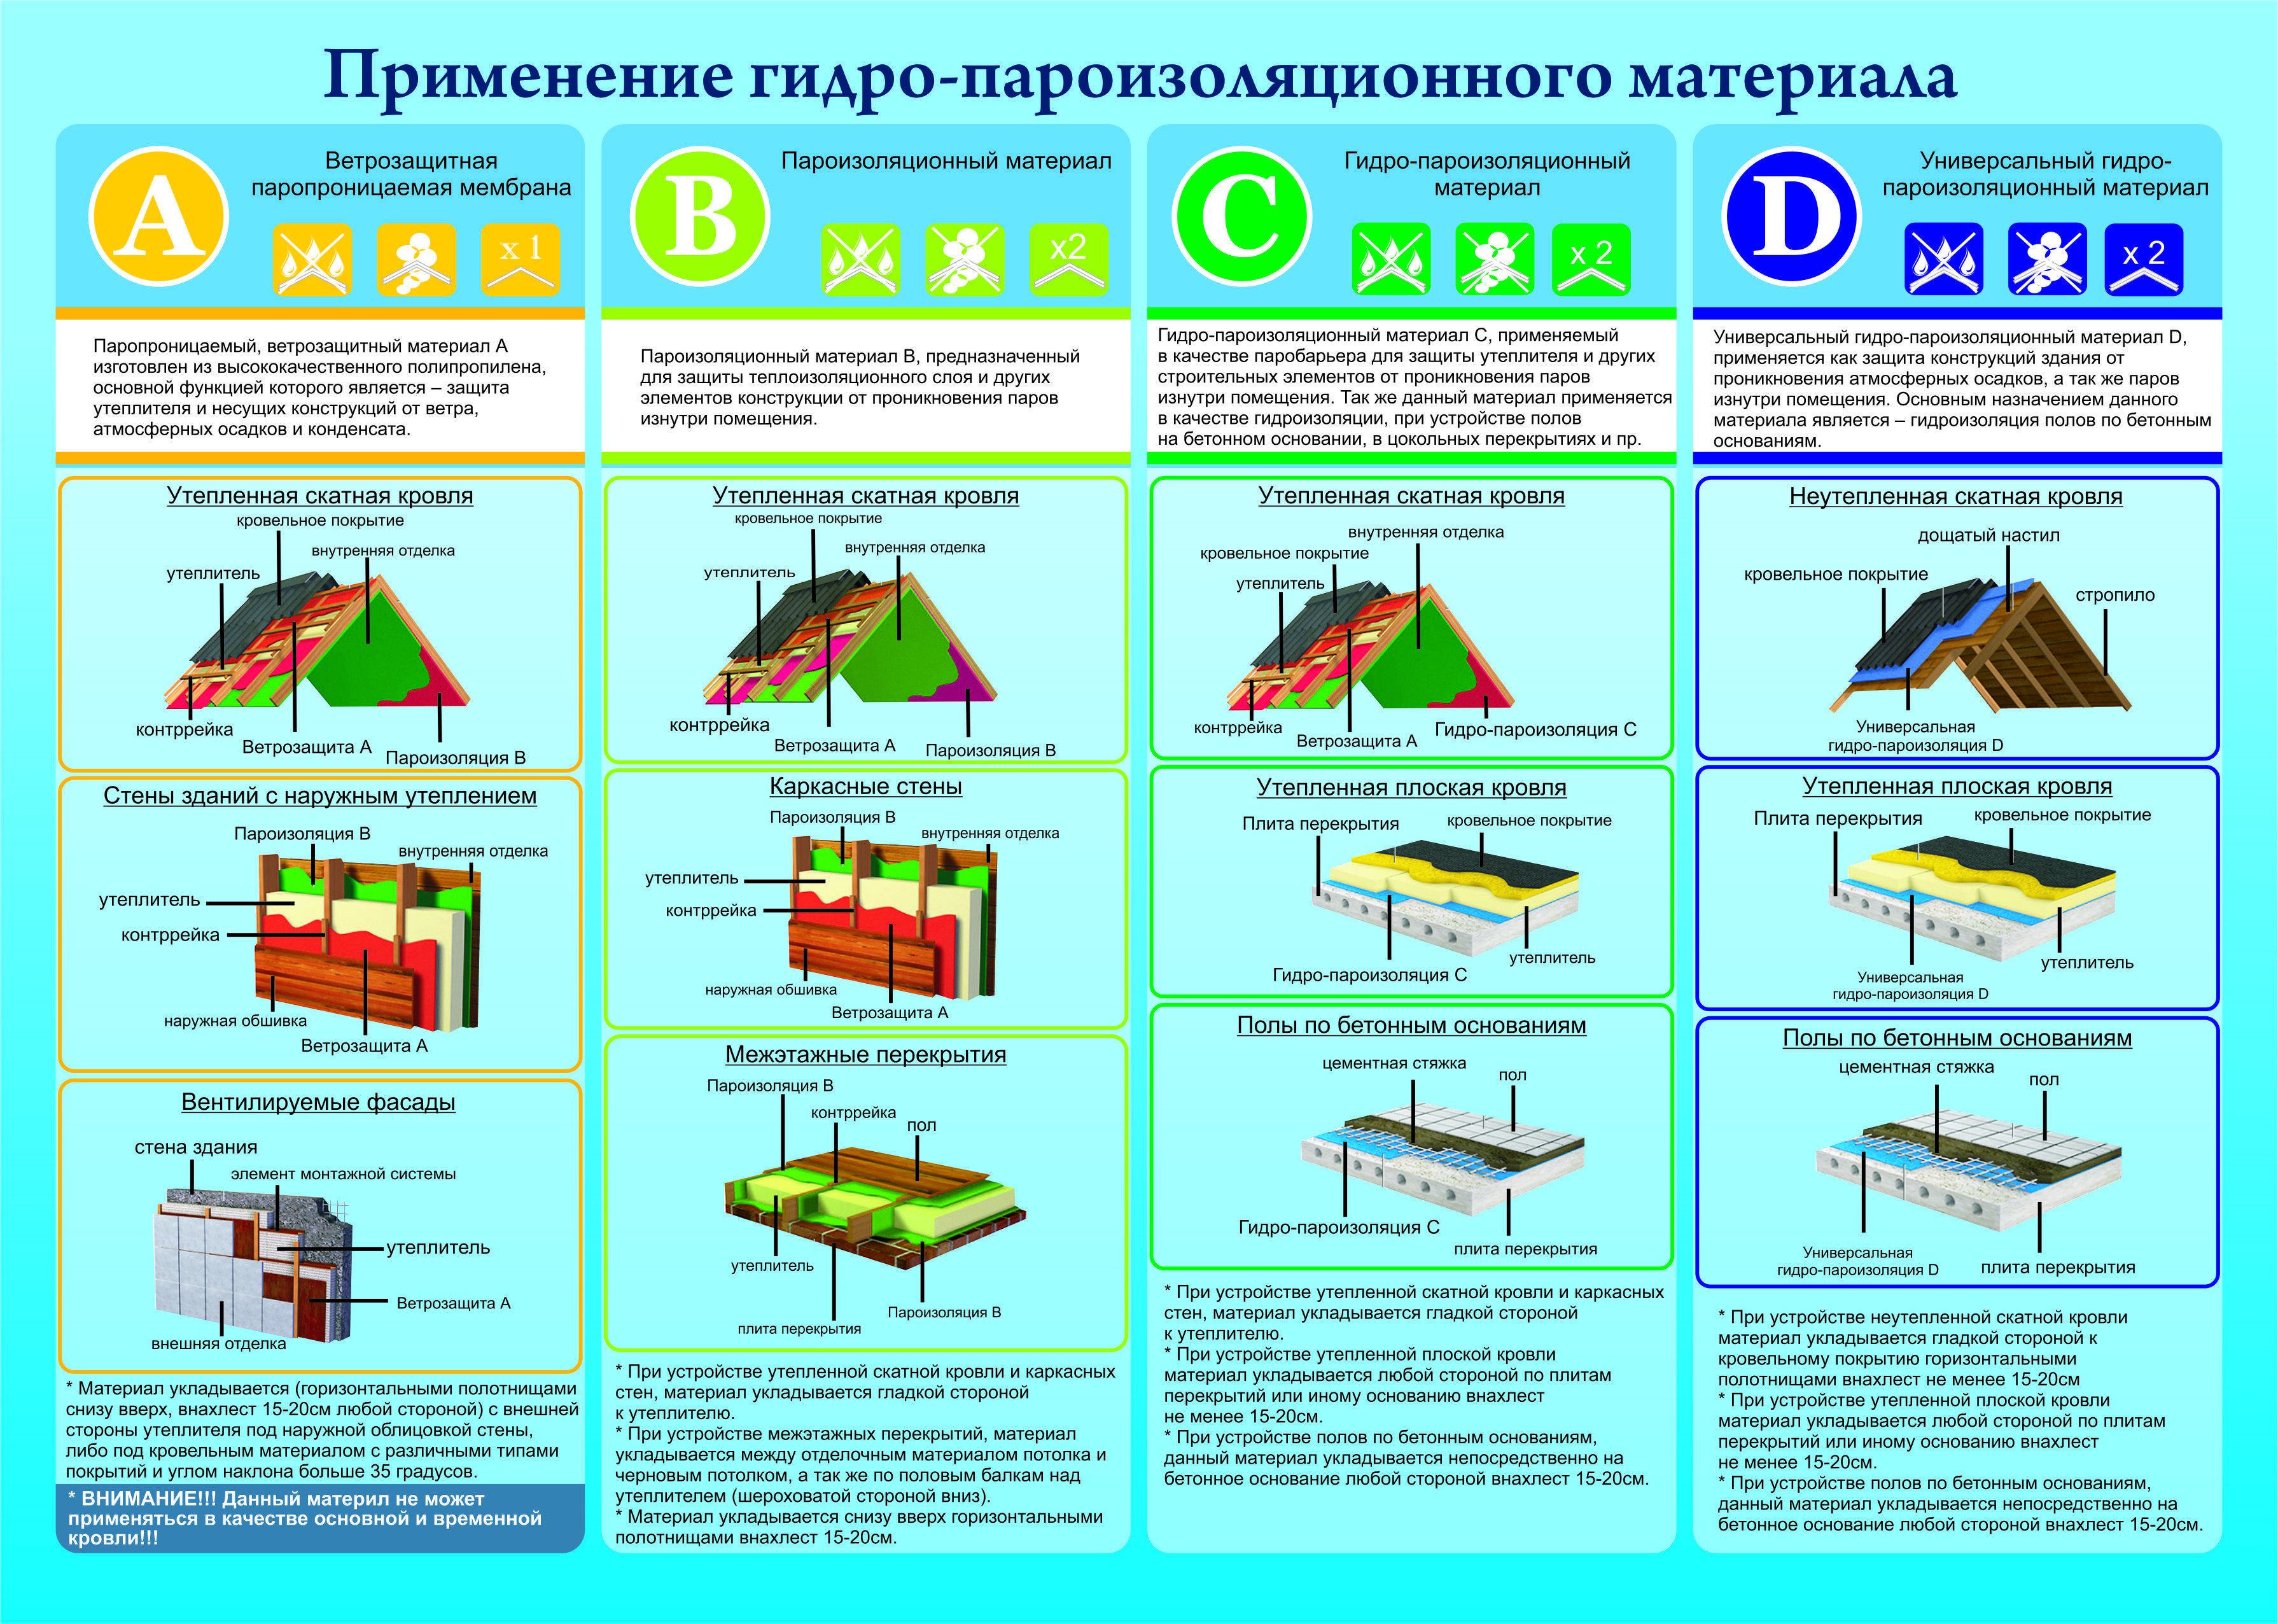 Ветрозащита, паро- и гидроизоляция изоспан (a, b, c, d, am) - инструкция по применению